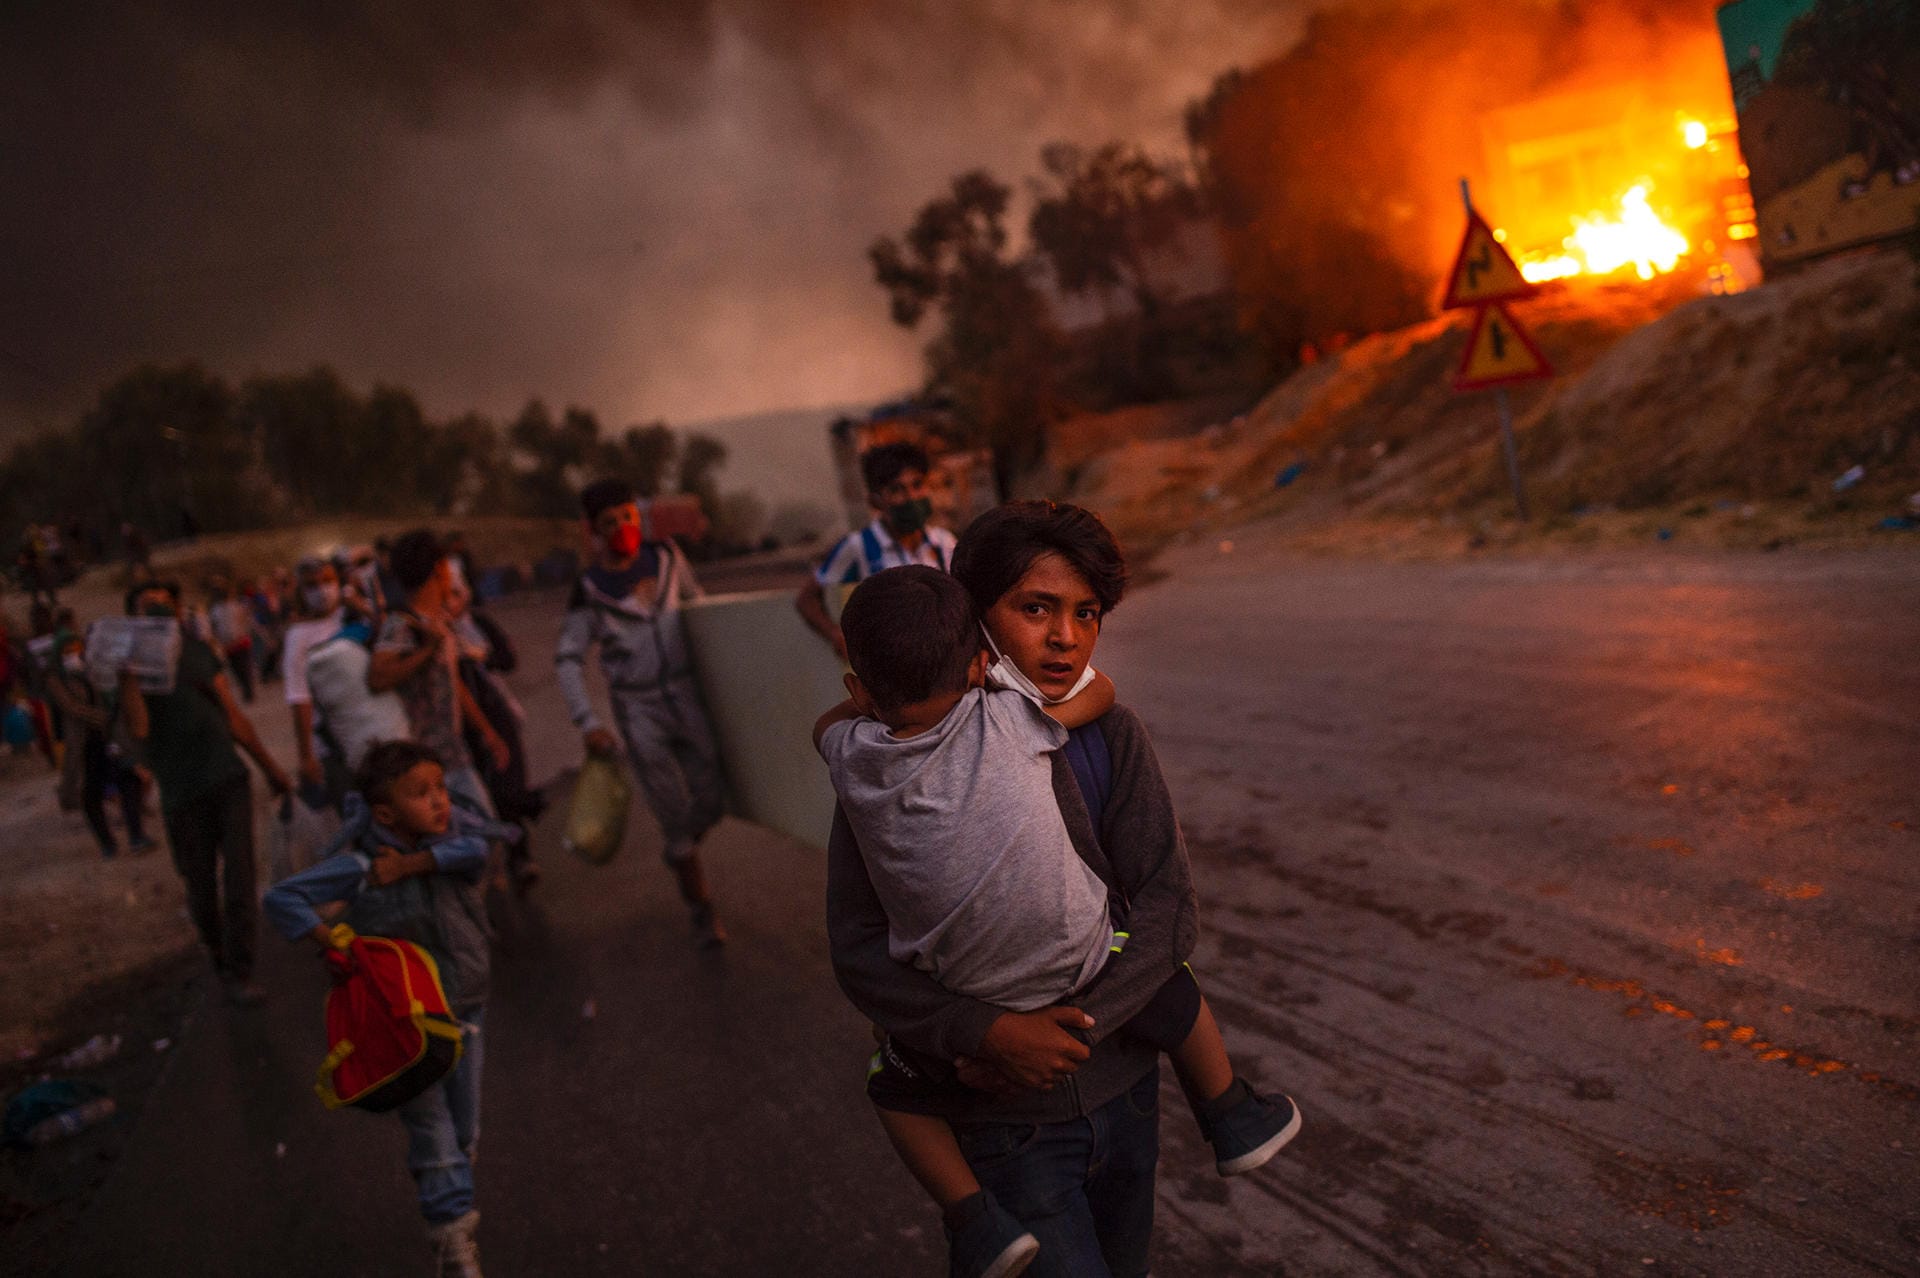 Der Sieger des diesjährigen Wettbewerbs ist der griechische Fotograf Angelos Tzortzinis. Als am 9. September 2020 das Flüchtlingslager Moria auf Lesbos niederbrannte, schoss er ein Bild von Kindern, die aus den Flammen flüchteten.